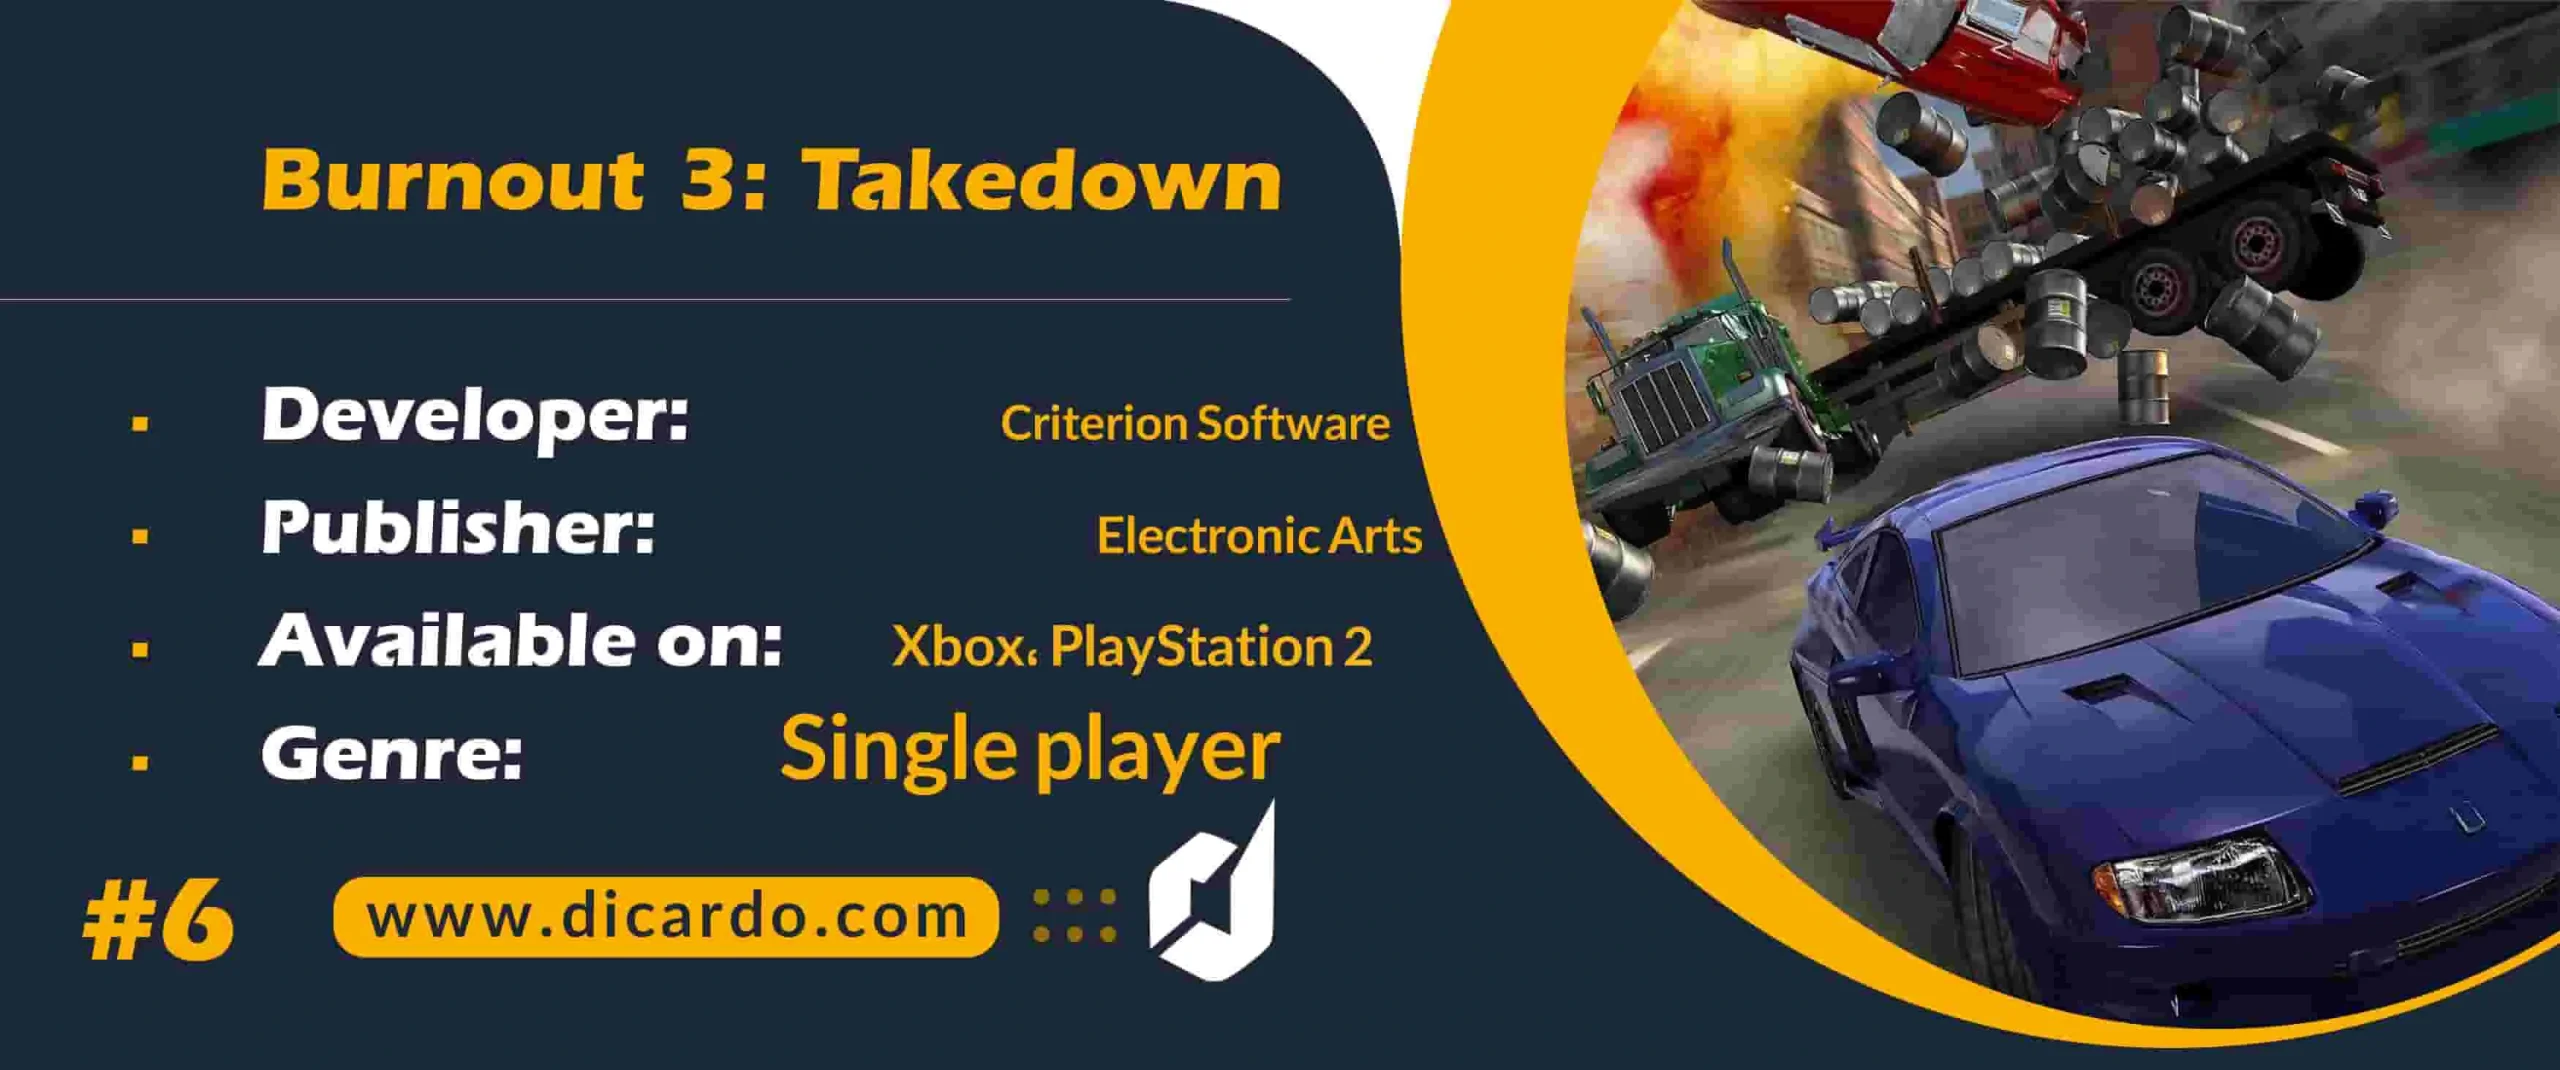 #6 بورنات 3 تیکدون Burnout 3: Takedown از بهترین بازیهای ایکس باکس با گیم پلی سرگرم کننده